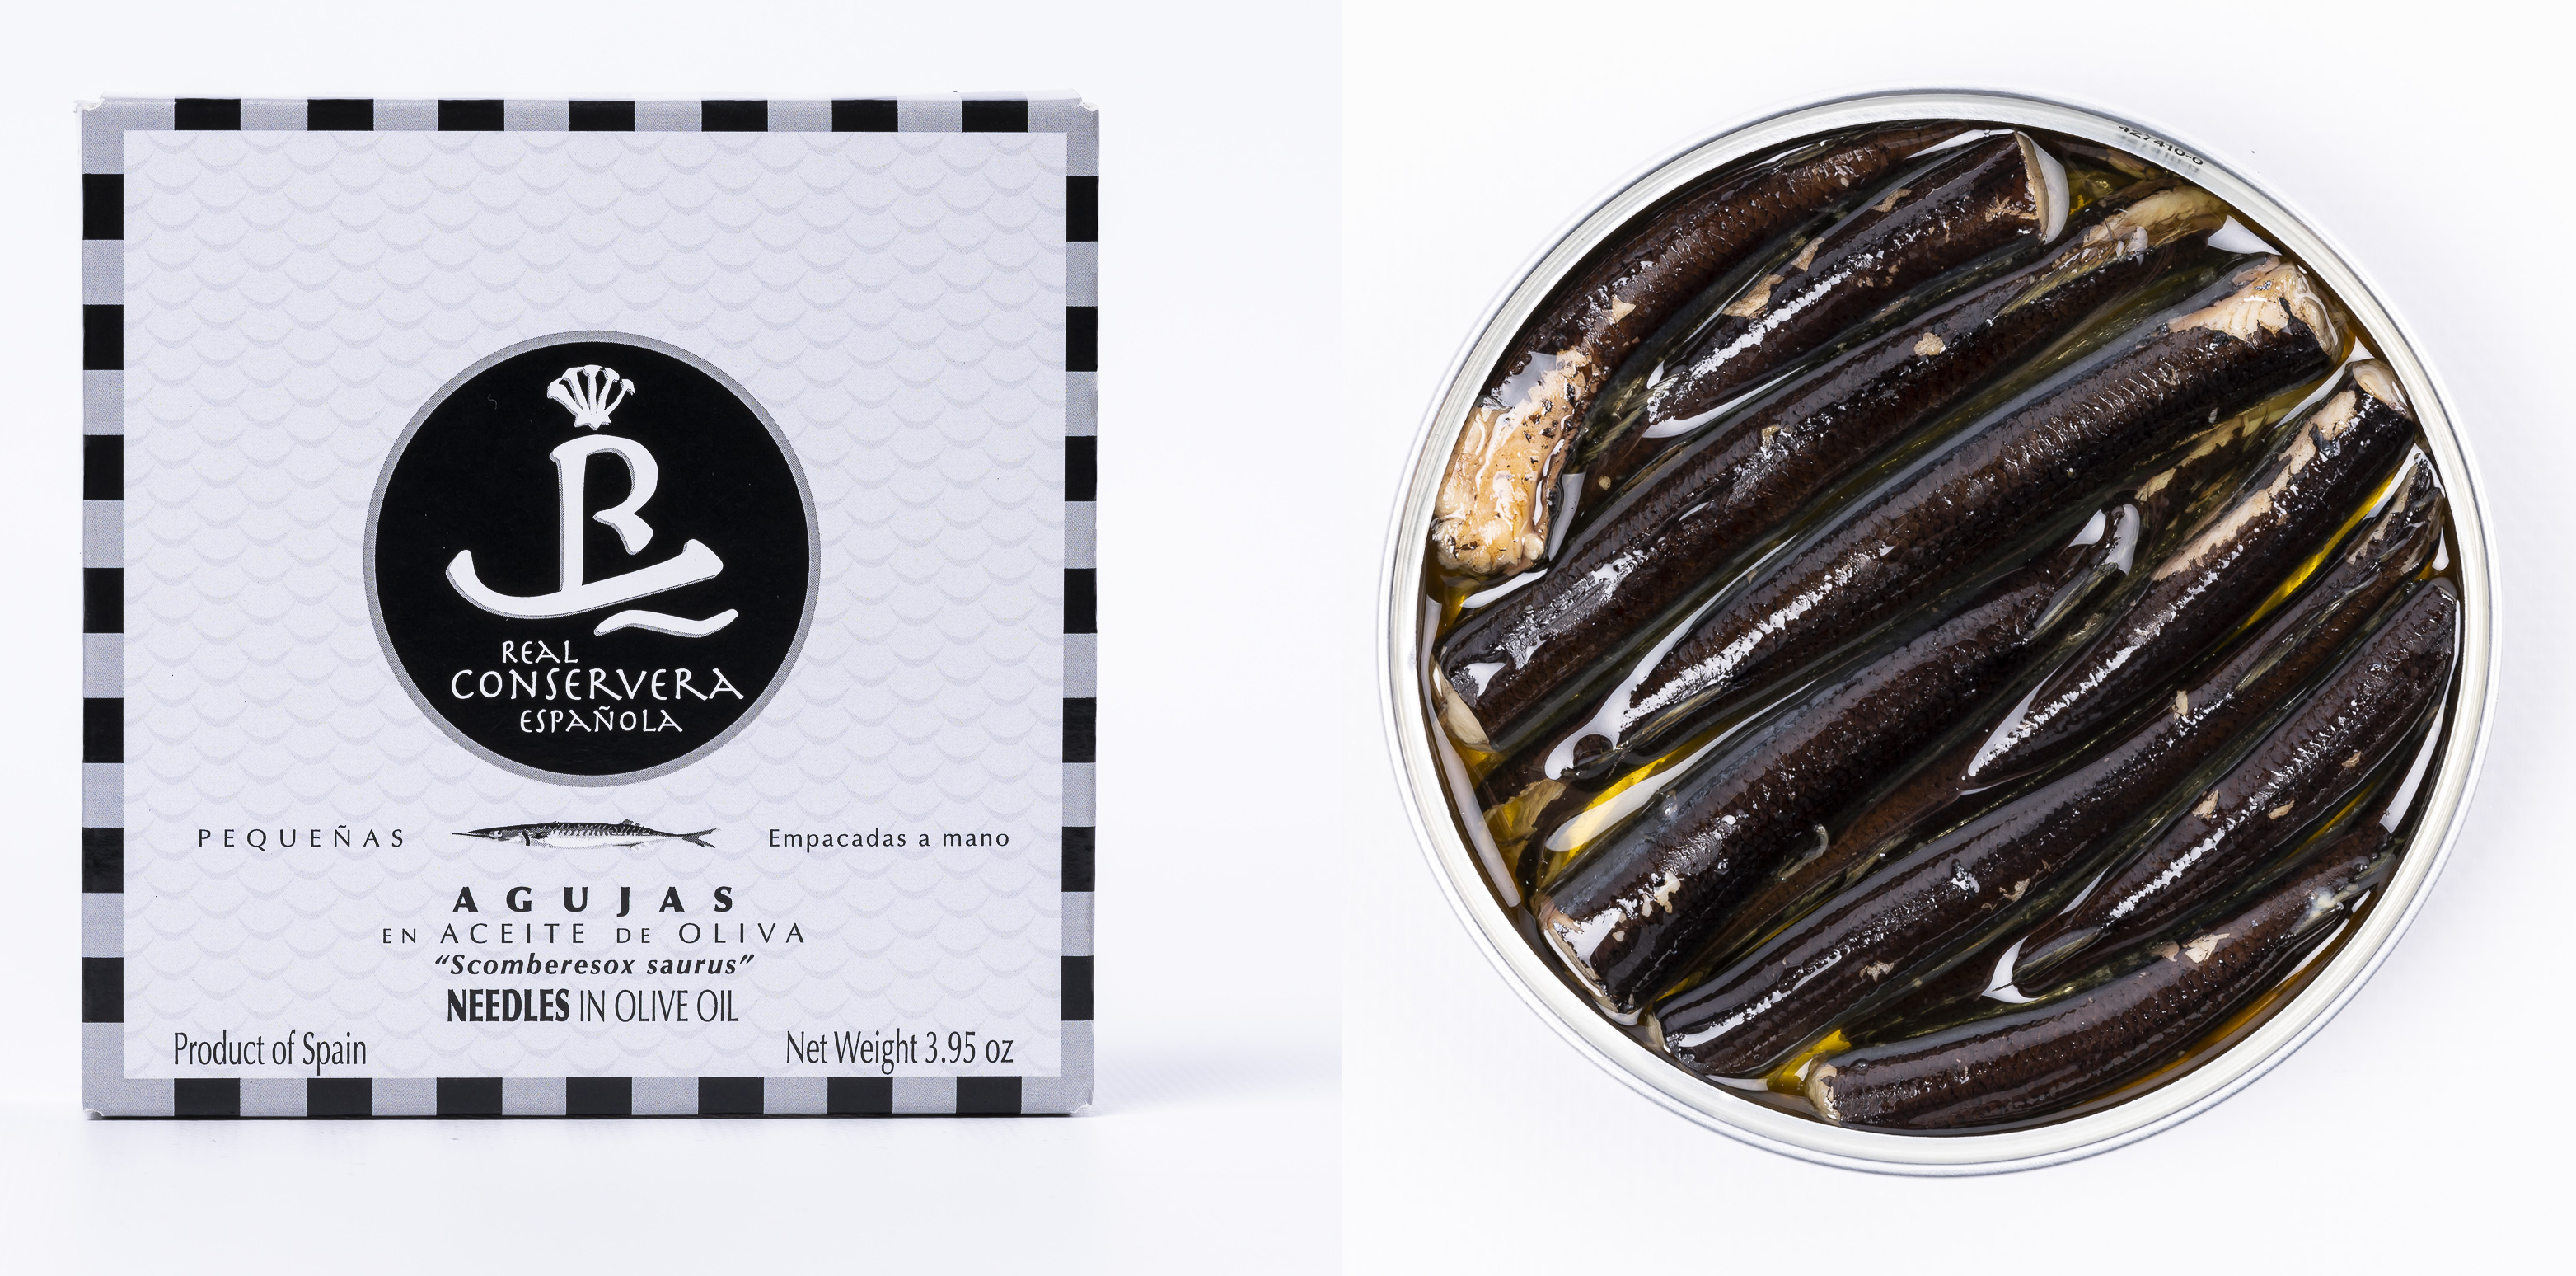 Agujas en aceite de oliva que recogen la esencia de la tradición conservera gallega